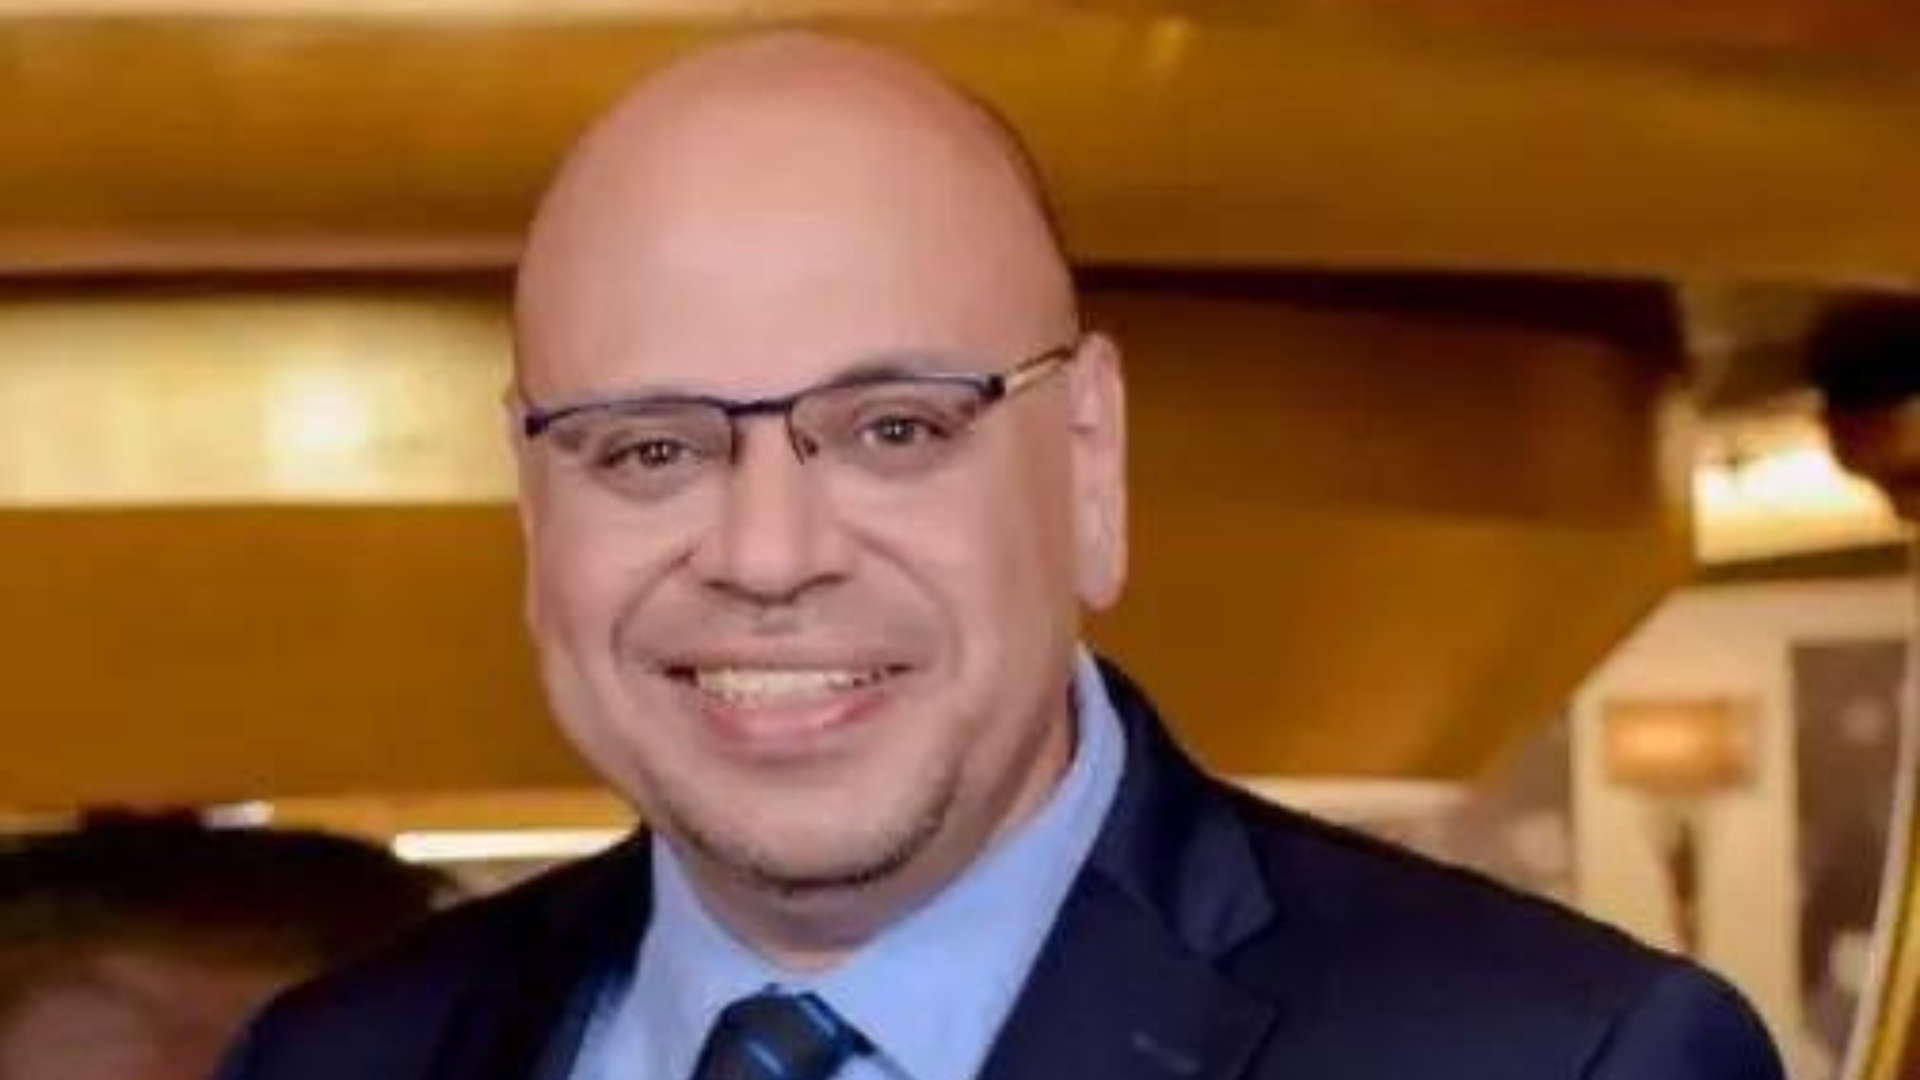  محمد سعدة نائب رئيس مجلس إدارة شركة كولدويل بانكر- مصر للتسويق والاستشارات العقارية